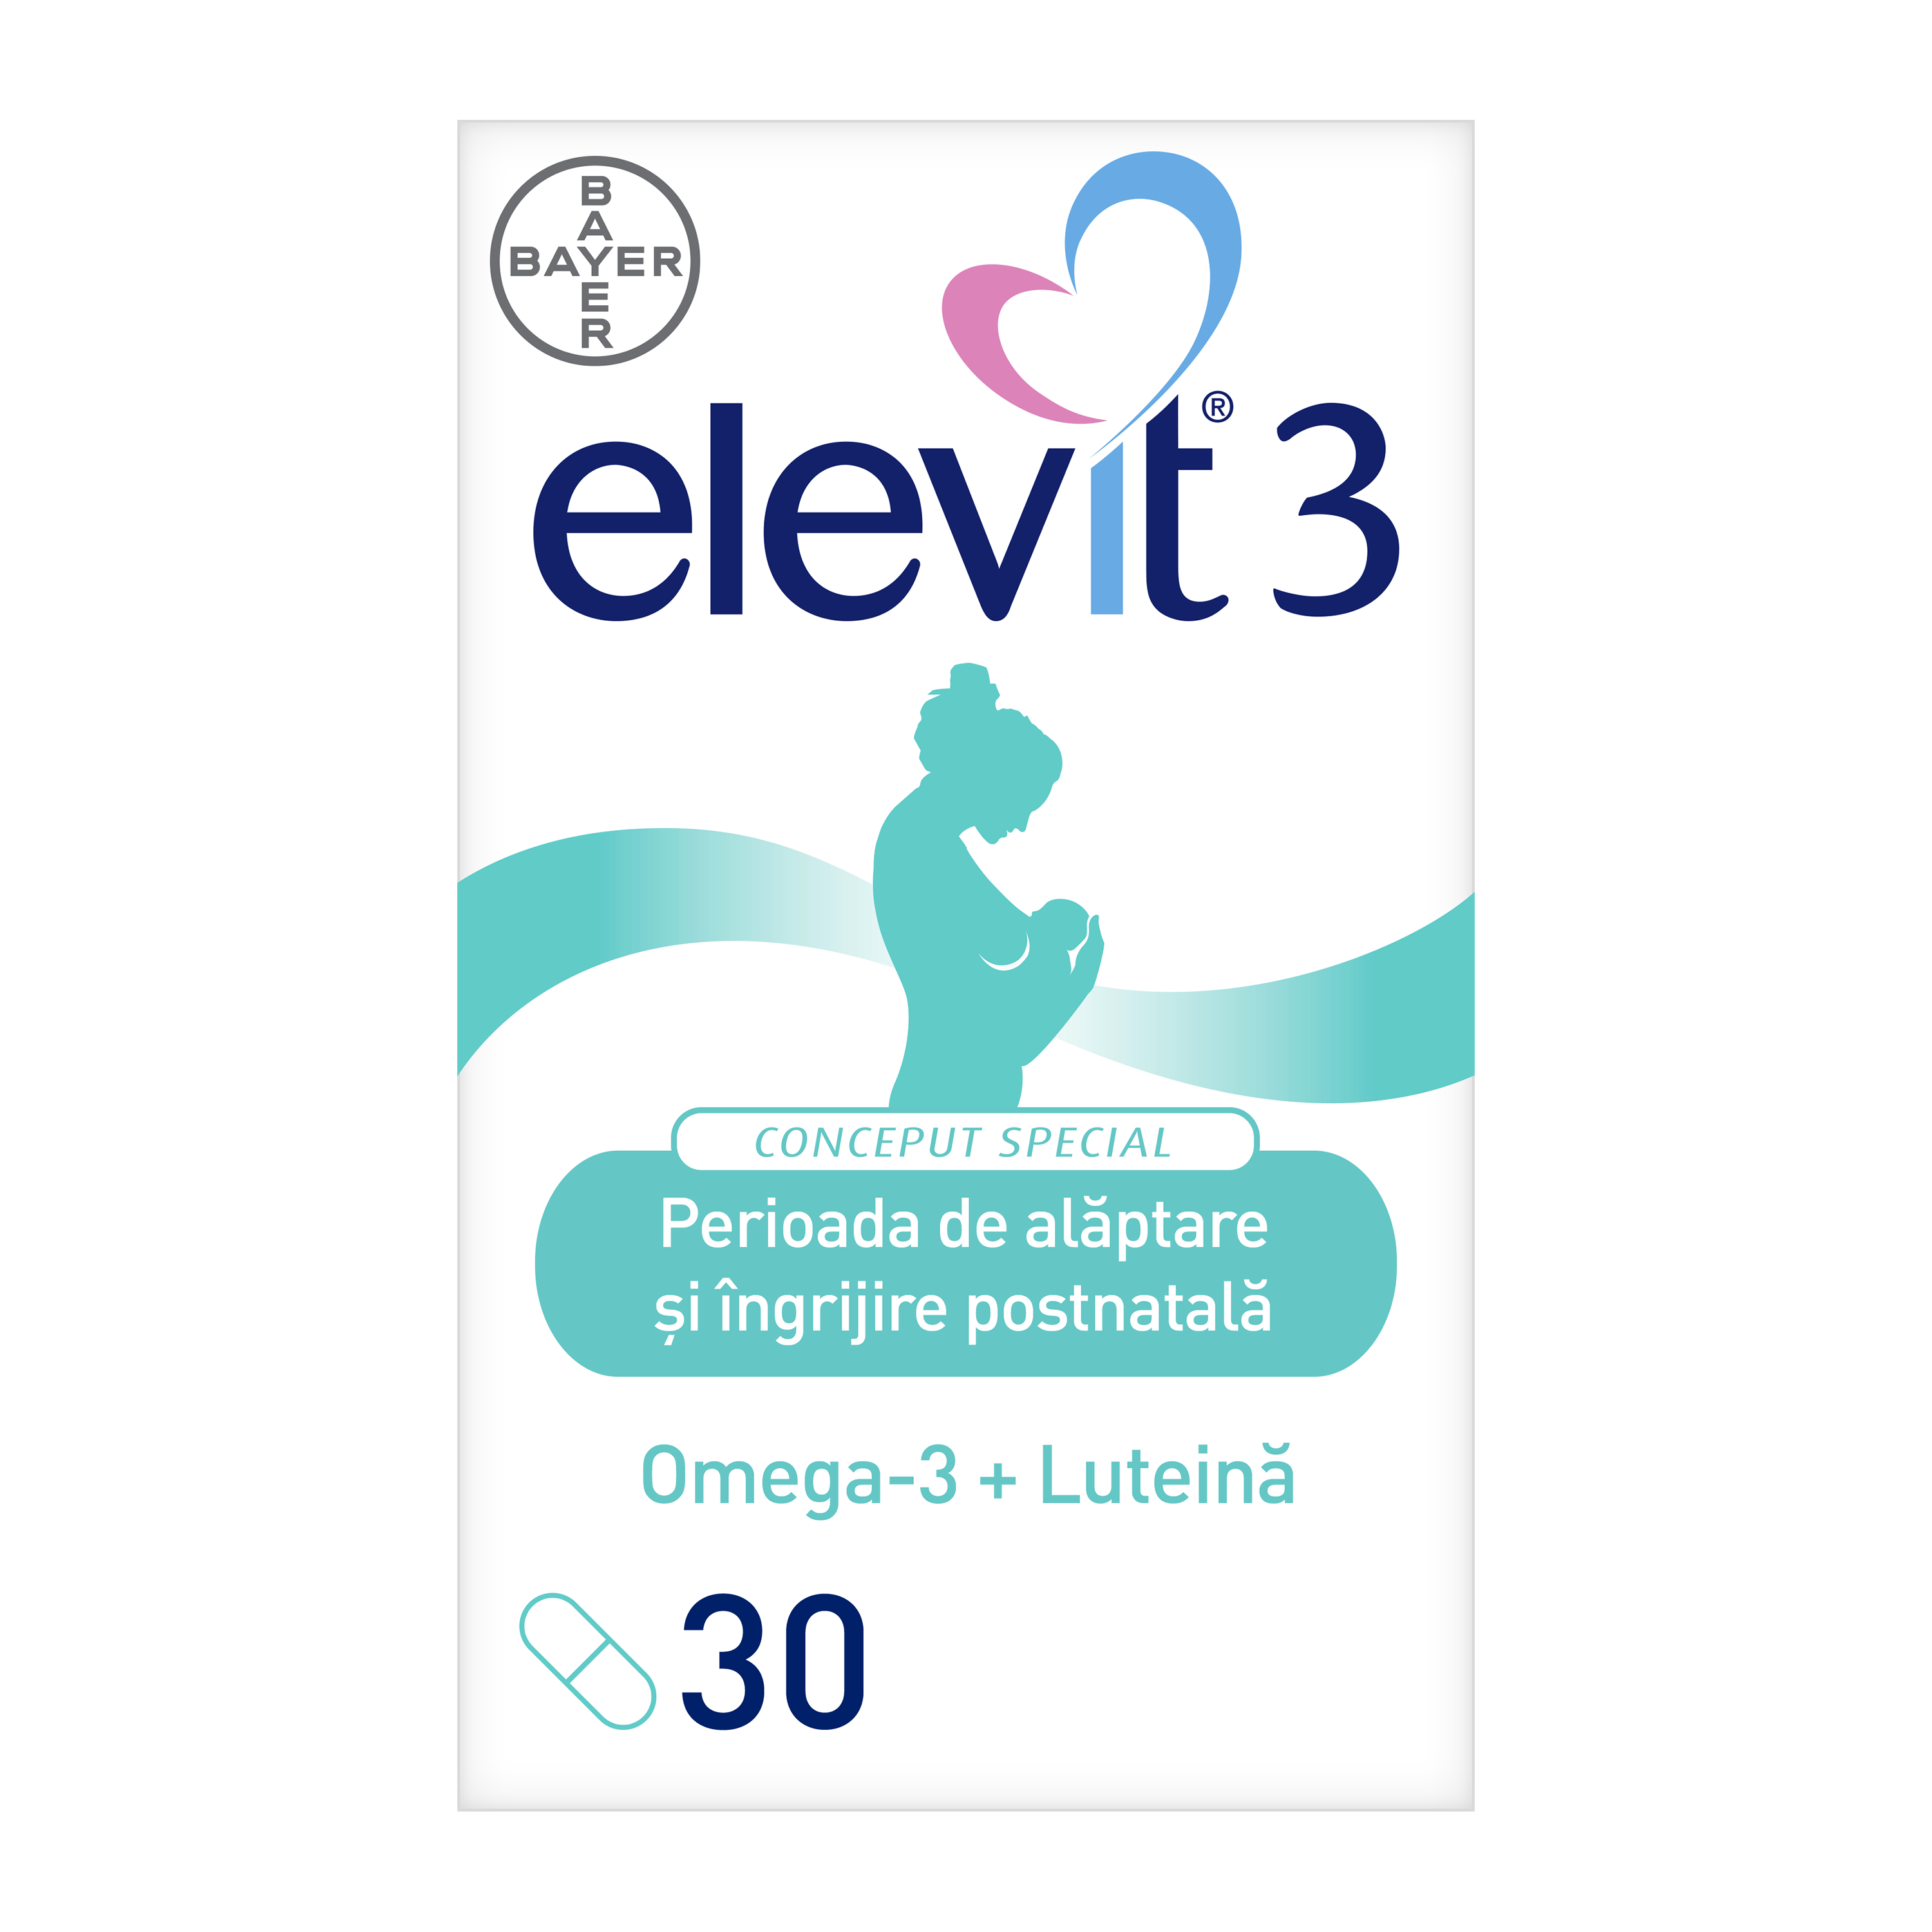 ELEVIT 3 PRE-CONCEPTIE SI SARCINA, 30 CPR, BAYER